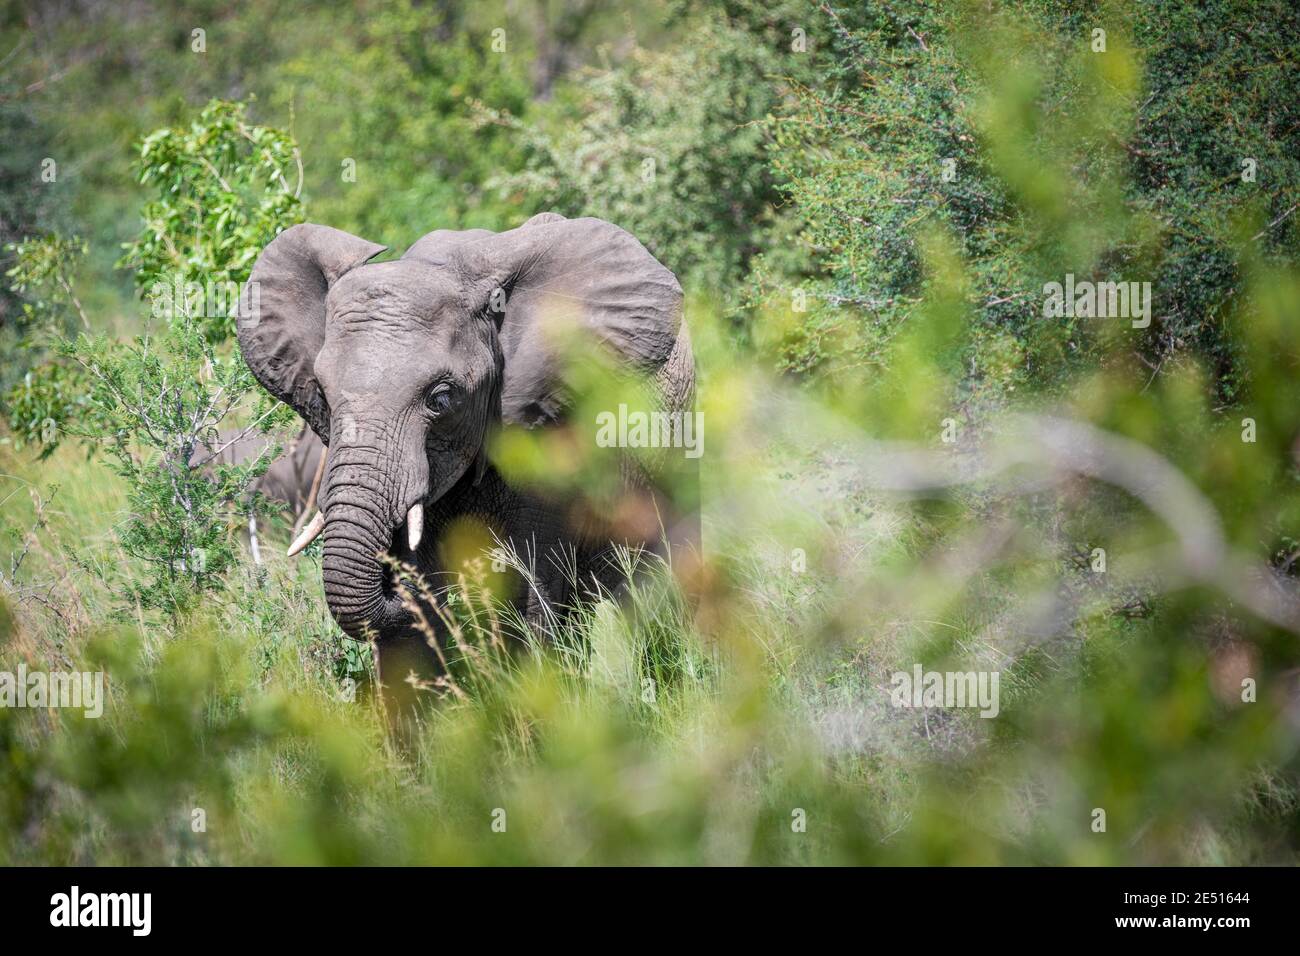 Un éléphant mâle gris broute parmi les buissons verts Banque D'Images